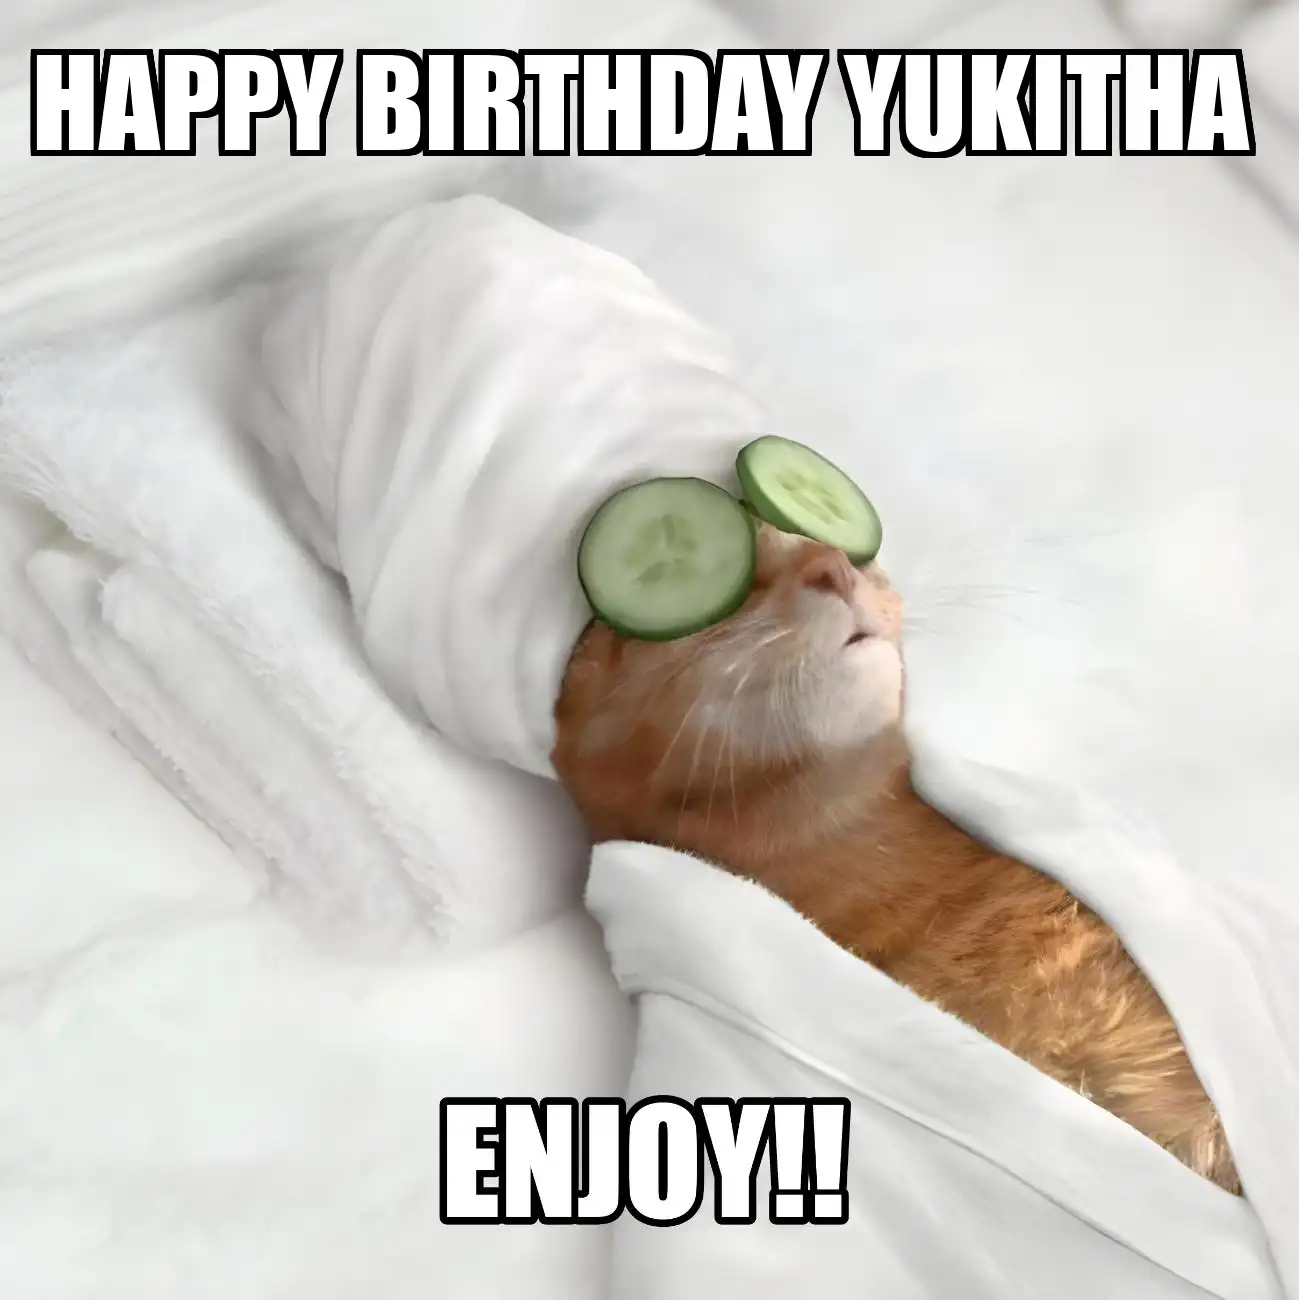 Happy Birthday Yukitha Enjoy Cat Meme